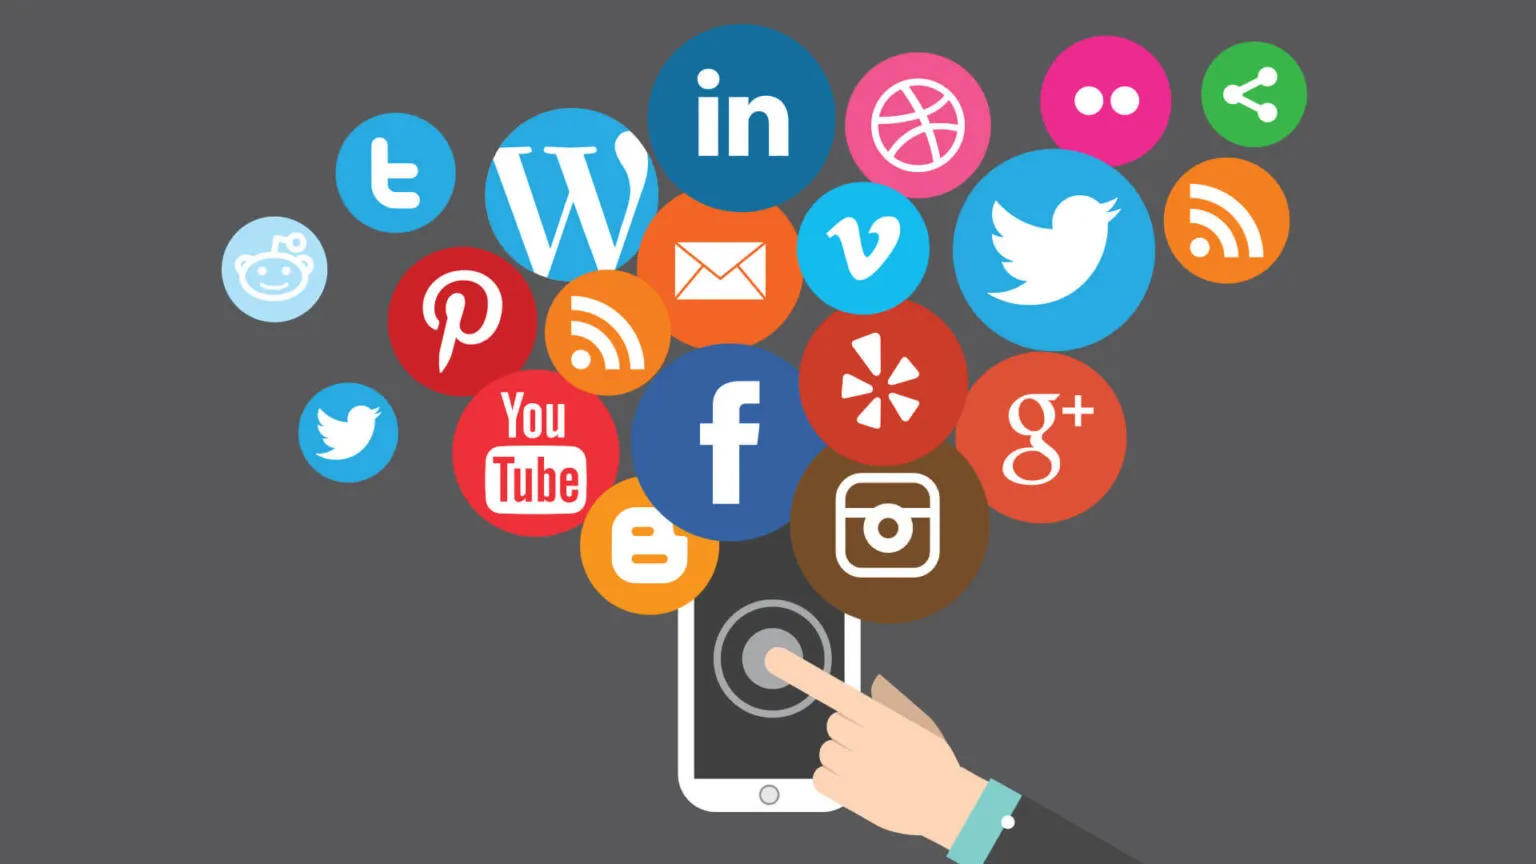 سوشال مدیا مارکتینگ یا بازاریابی شبکه های اجتماعی به زبان ساده